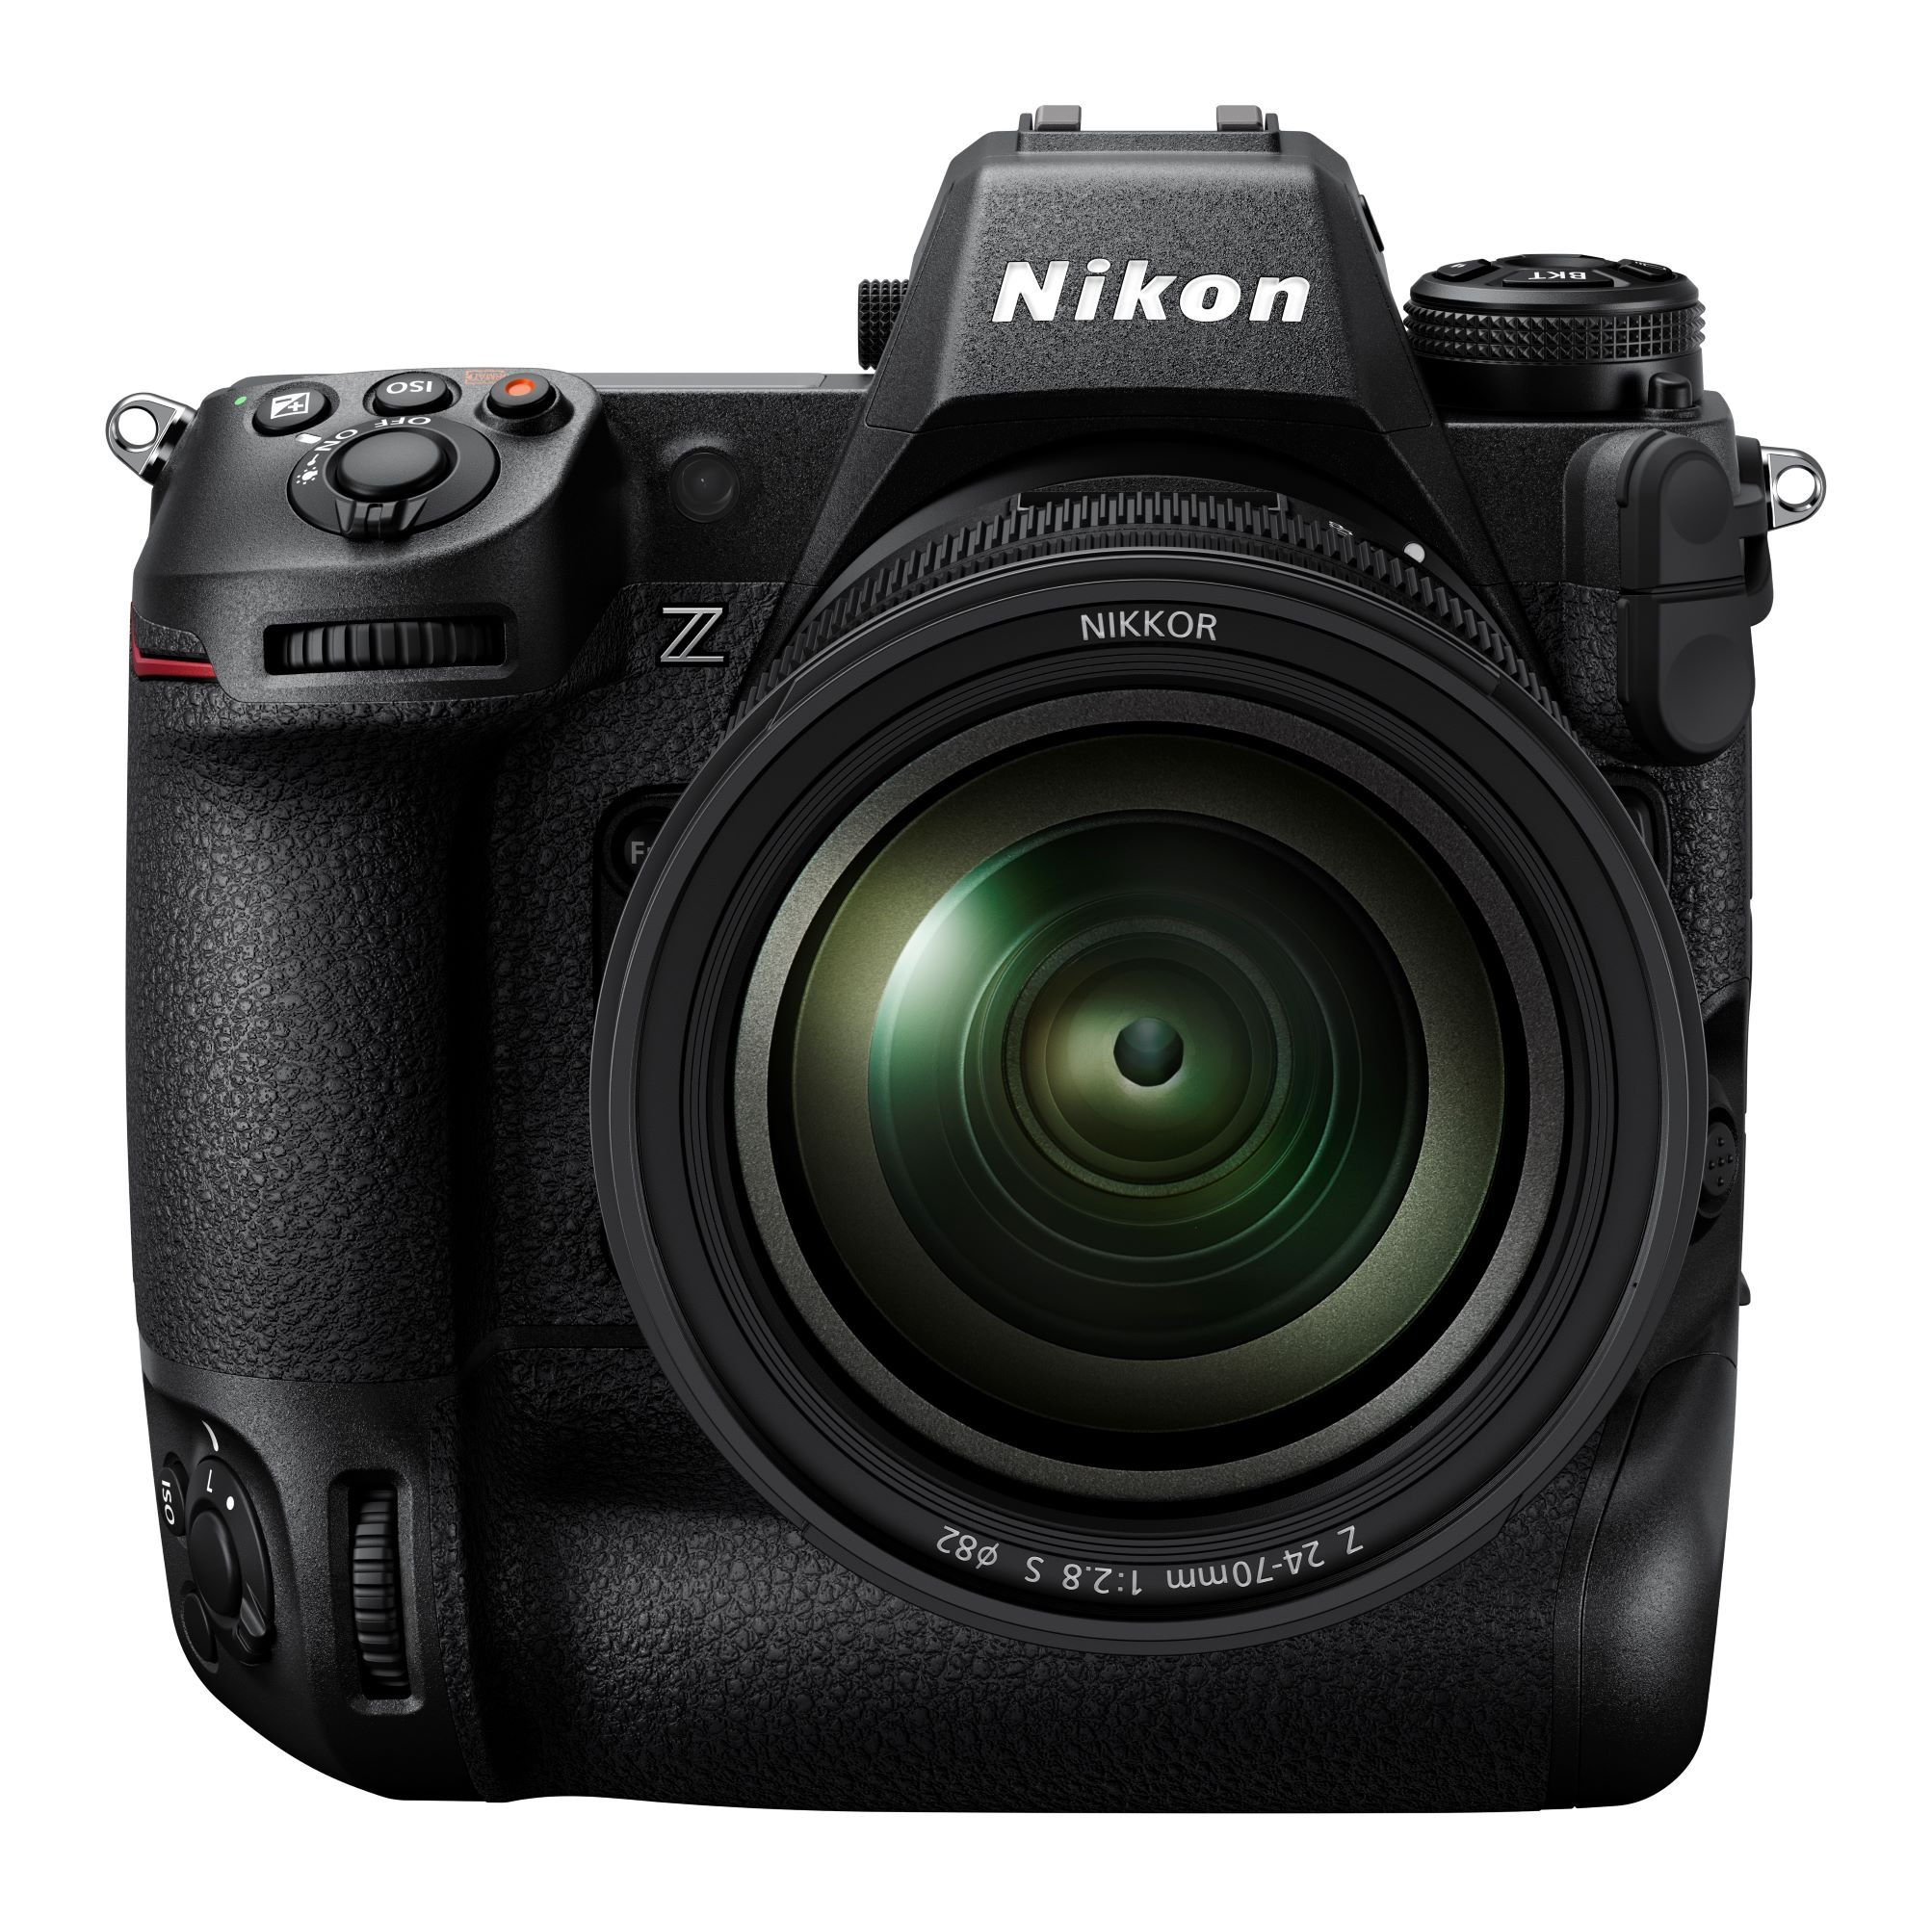 Nikon công bố phát triển máy ảnh Z9 full frame cao cấp